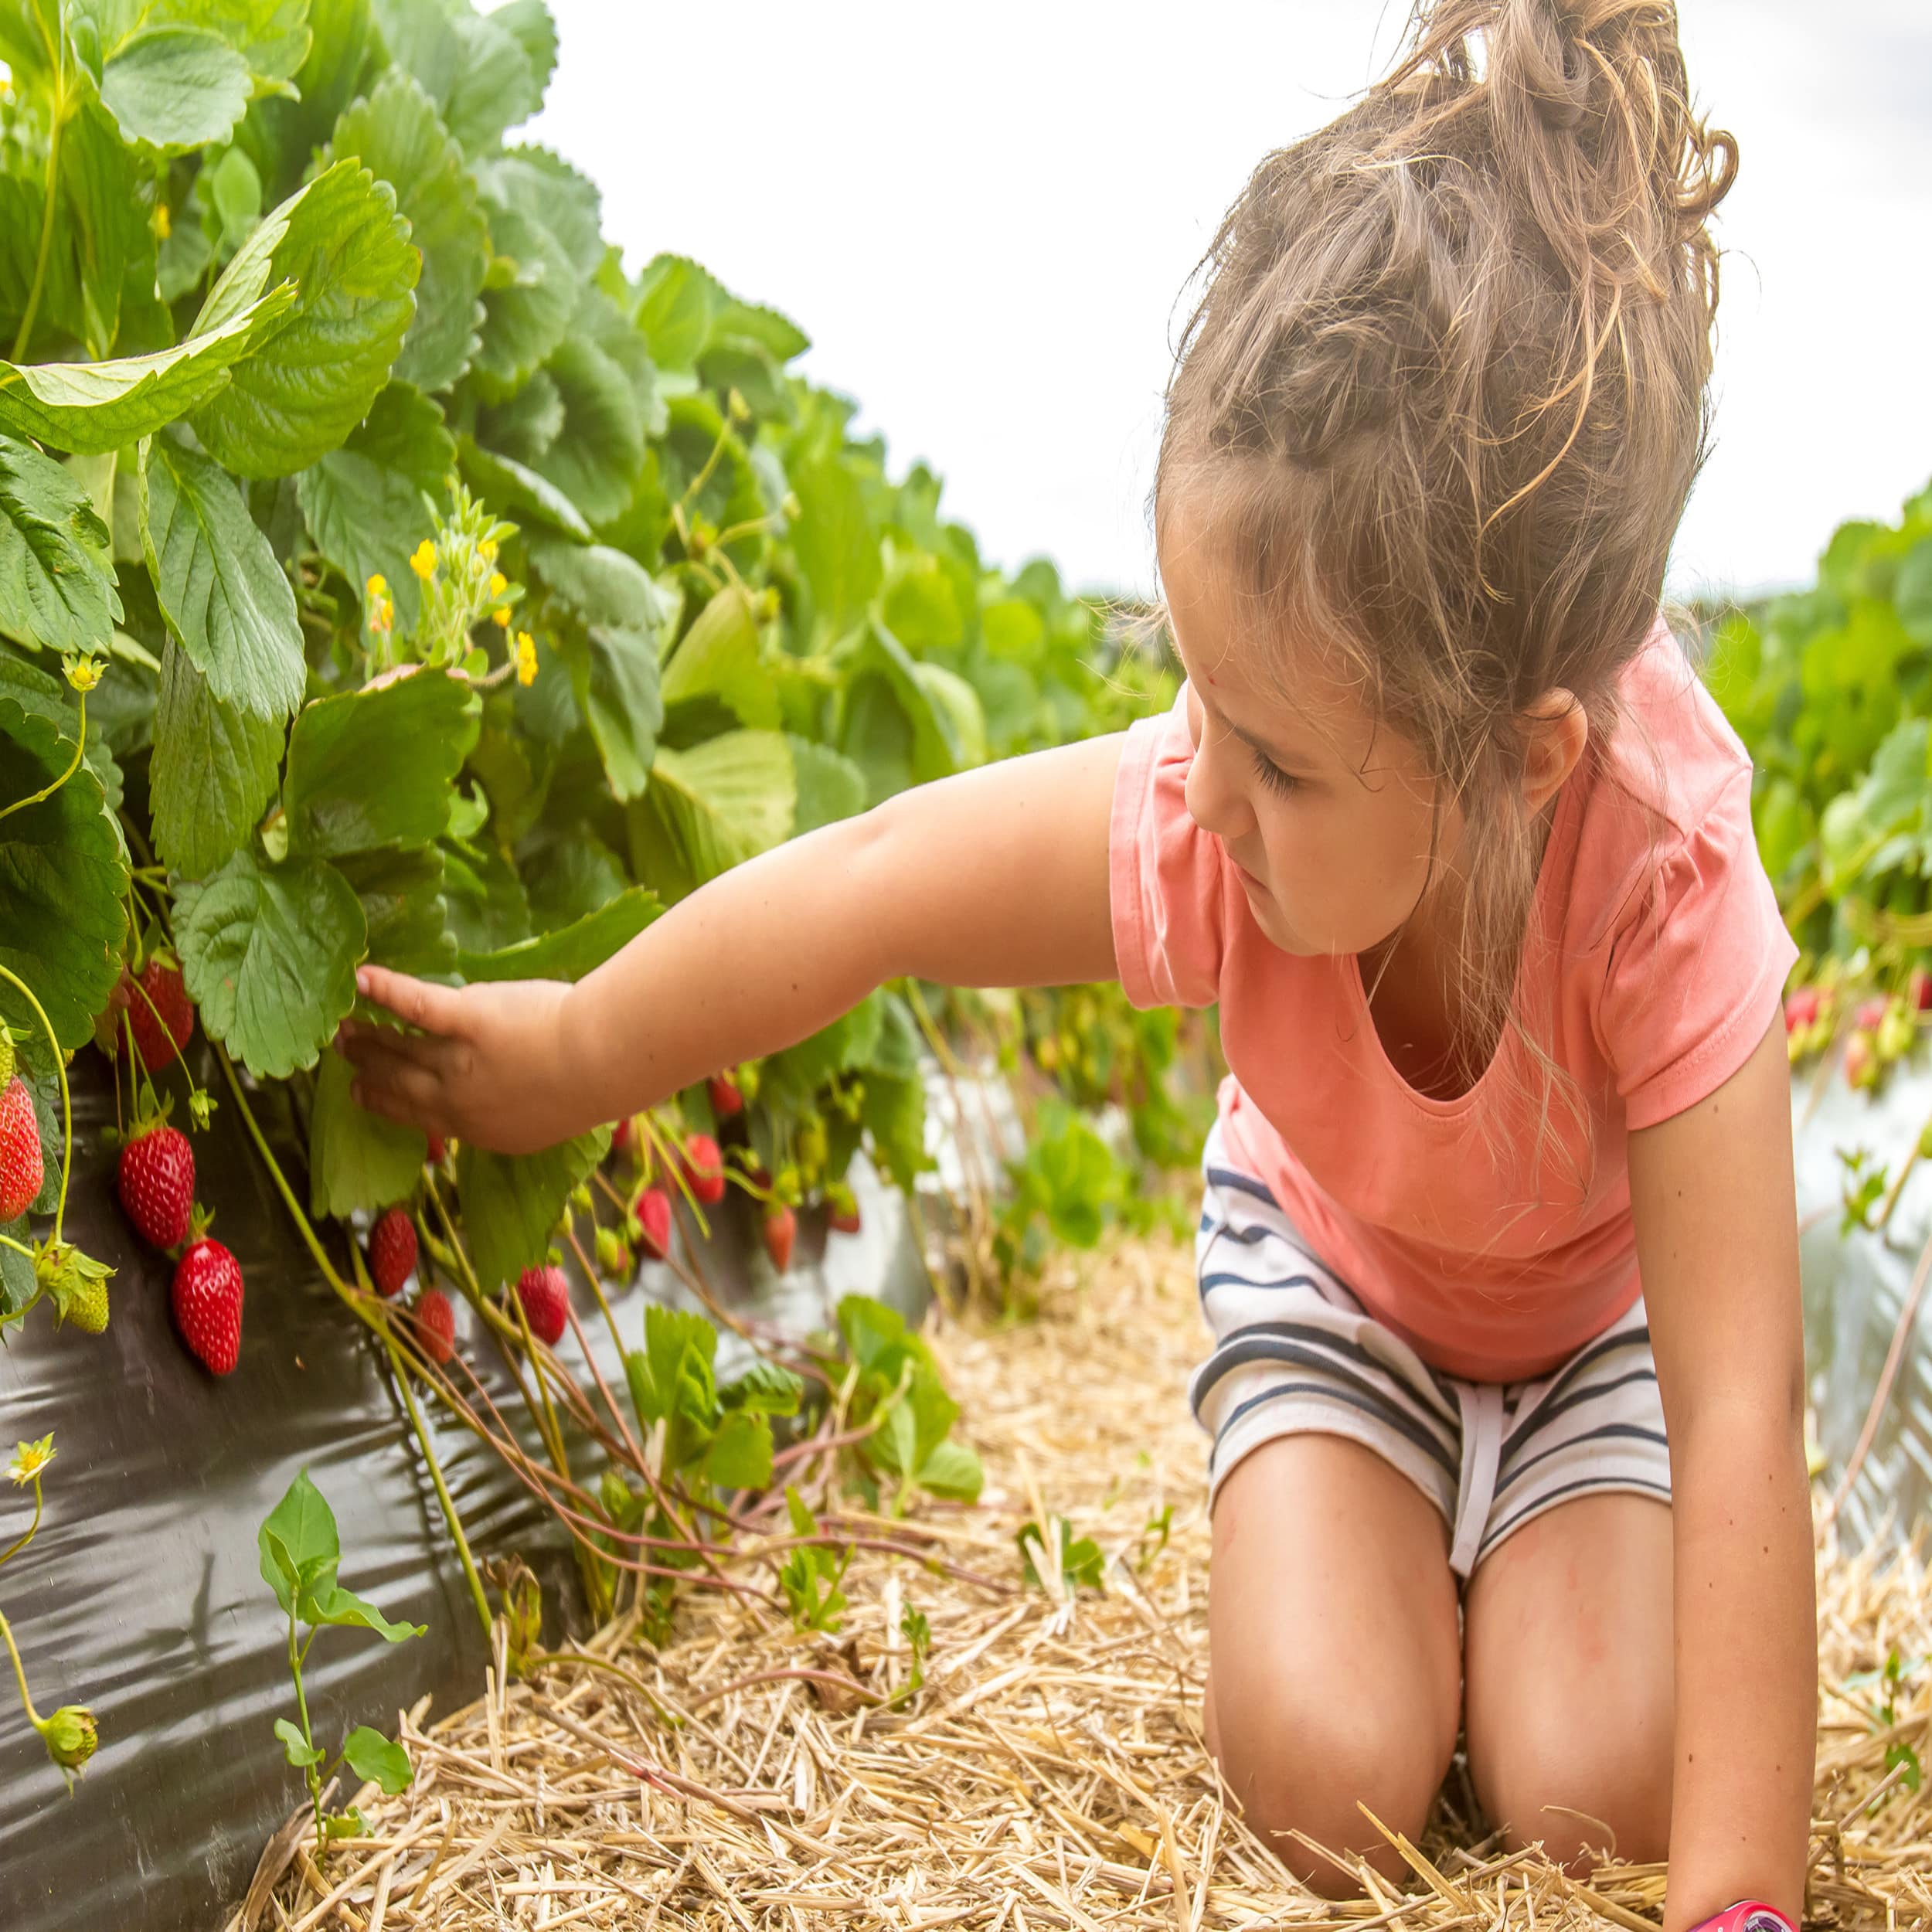 Ein Mädchen kniet auf Stroh in einem Erdbeerfeld und berührt eine Erdbeerpflanze.